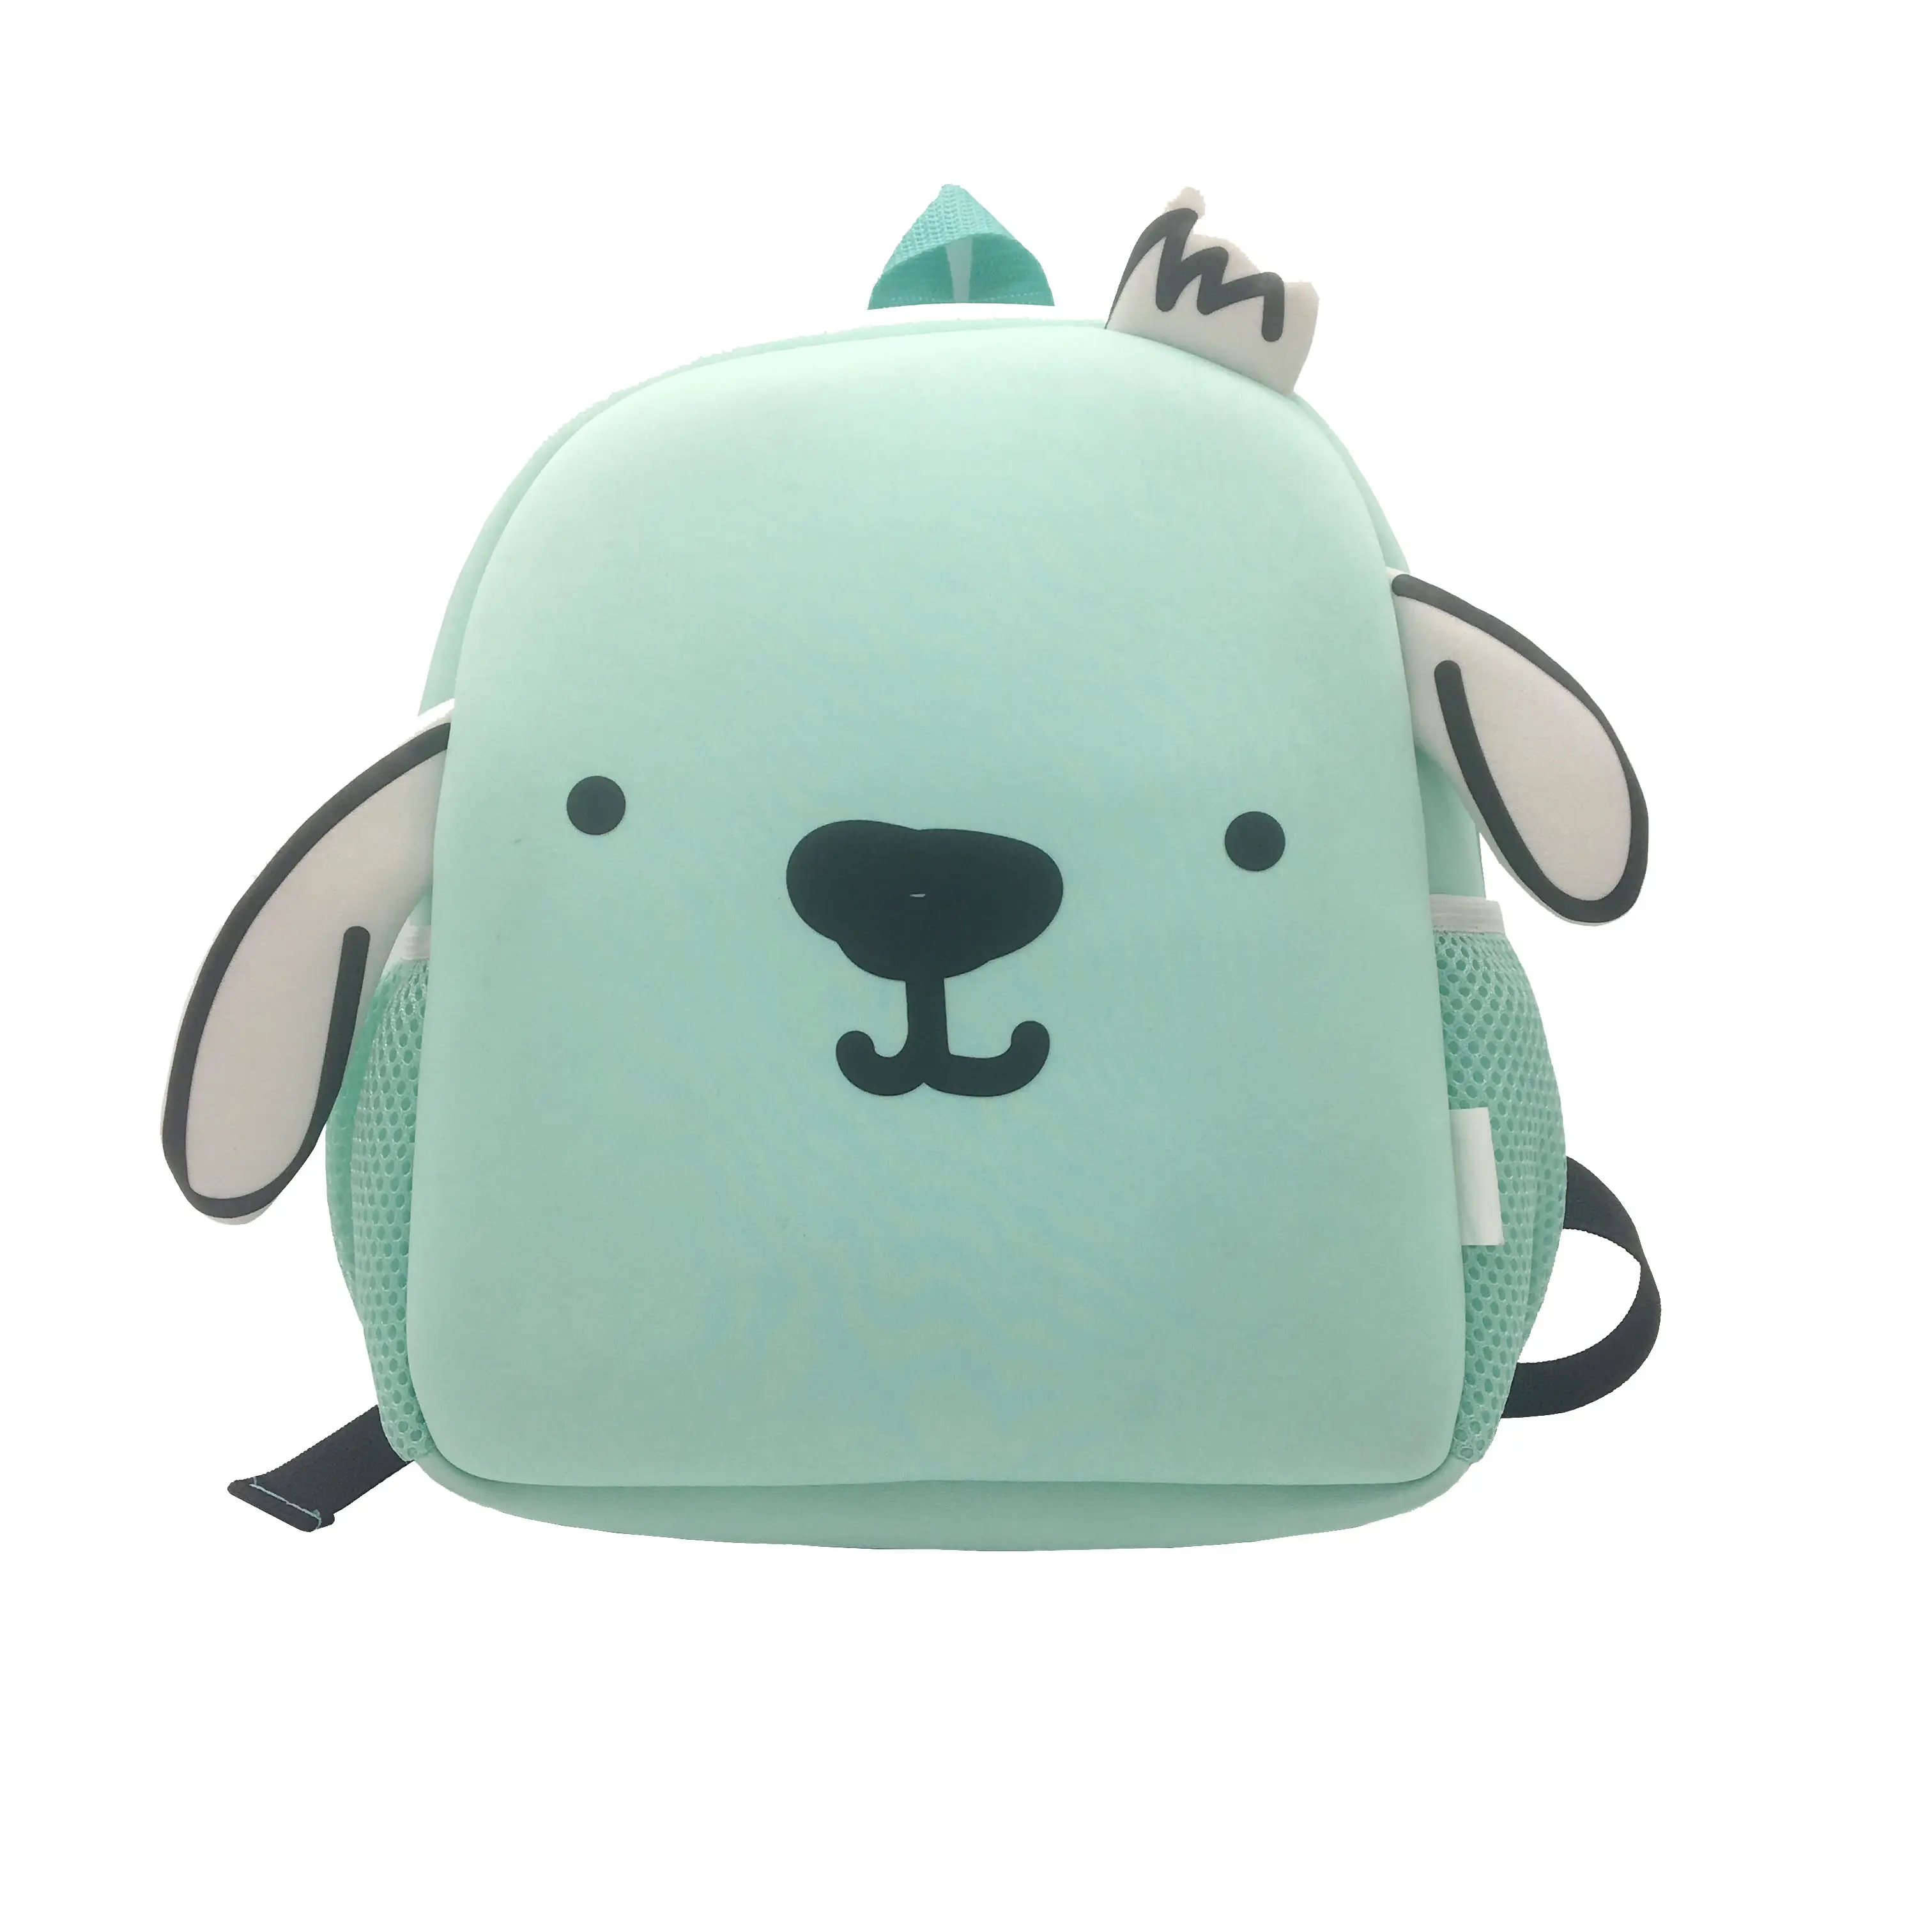 Hot sale waterproof neoprene cartoon animal kids backpack school bags